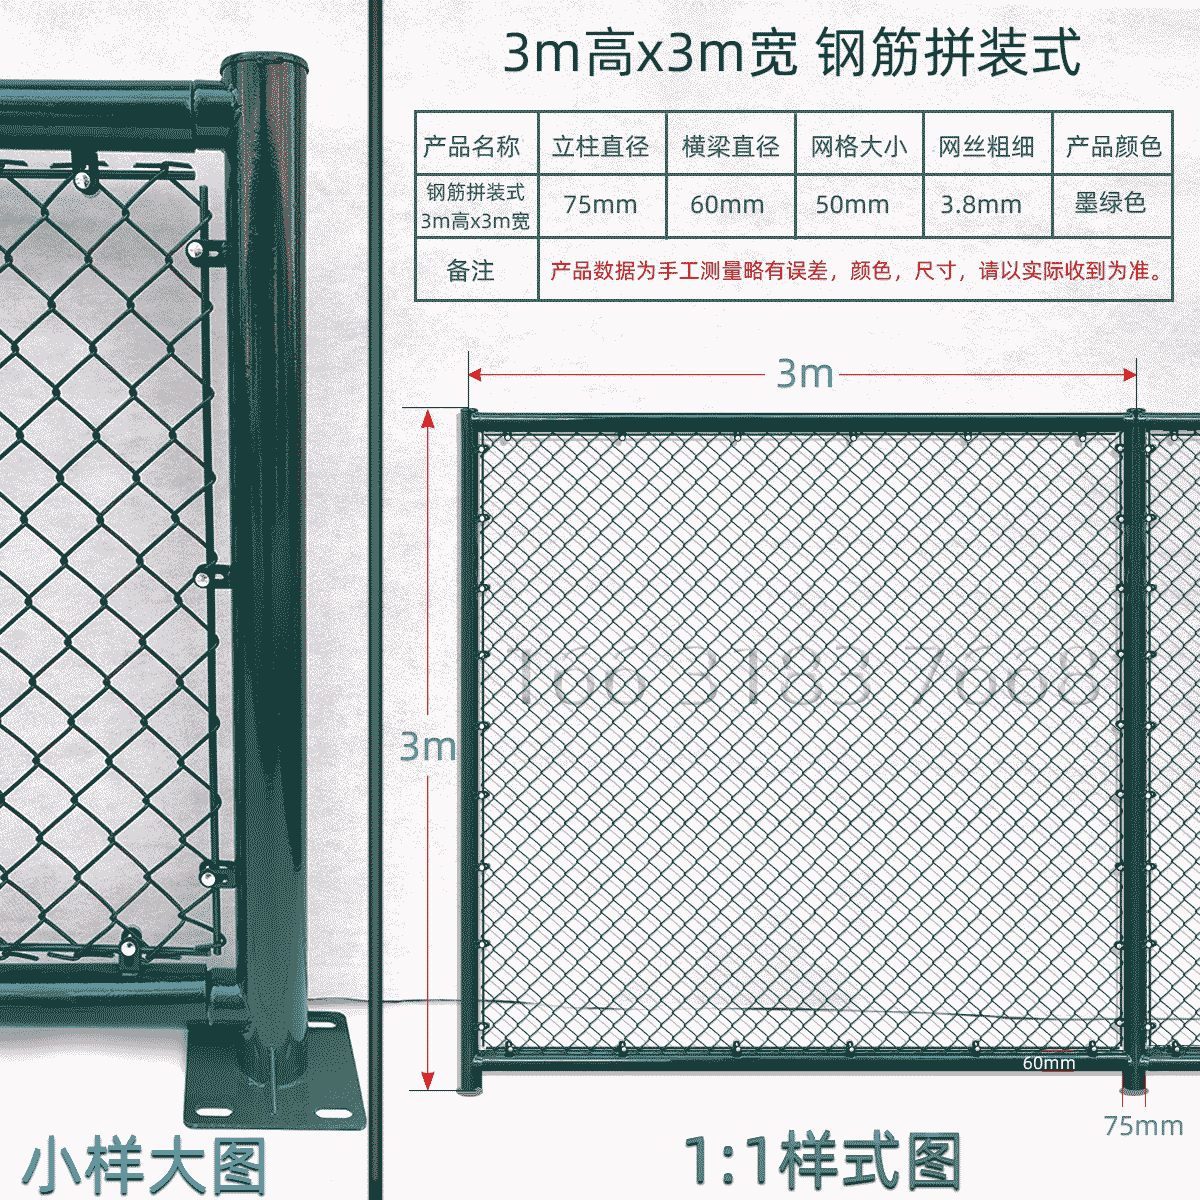 3m高x3m宽钢筋拼装式球场围栏网